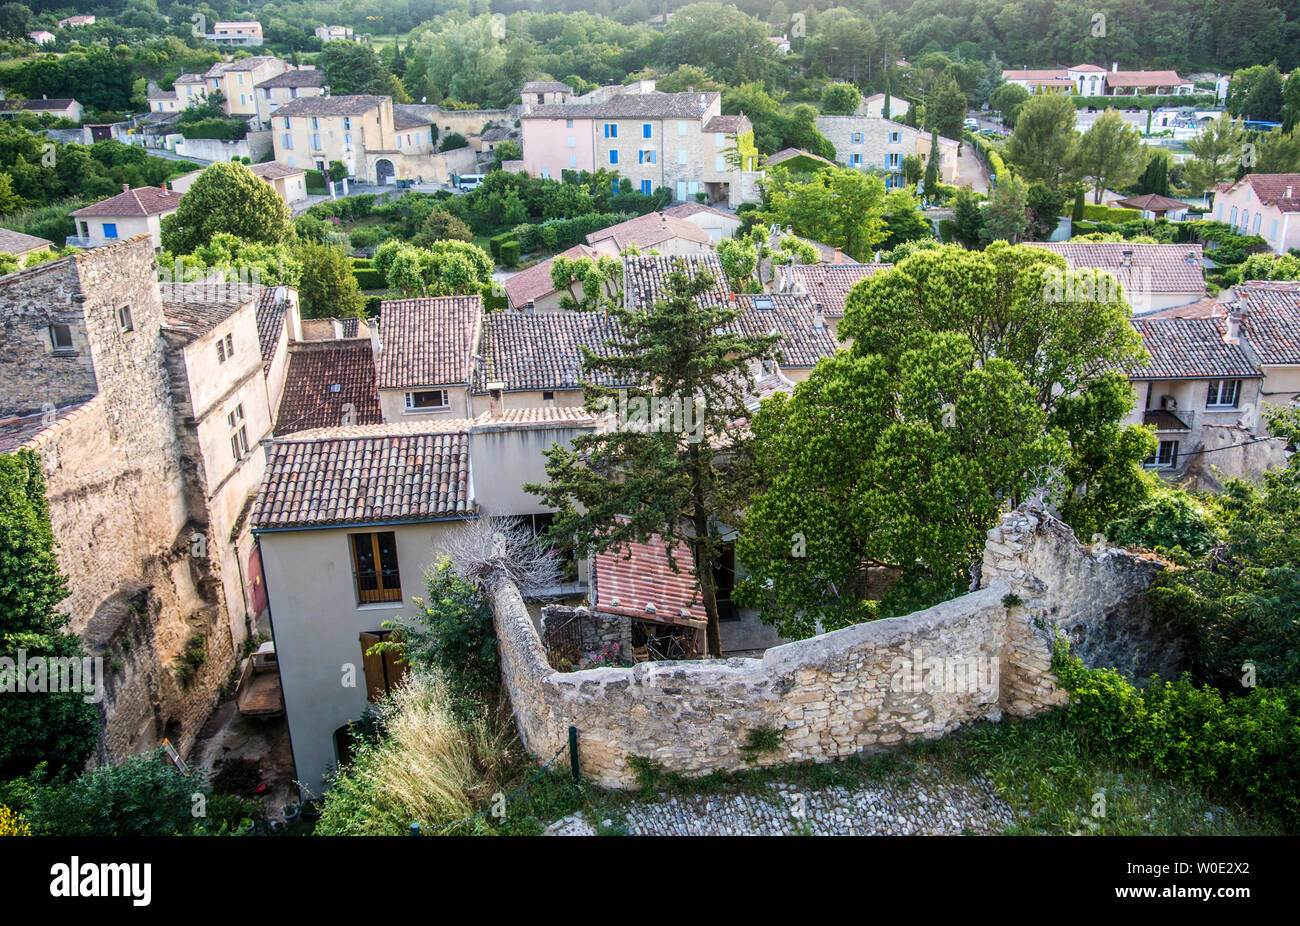 Francia, Vaucluse, sumiendo a vistas de los tejados de Malaucene desde el viejo castillo Foto de stock